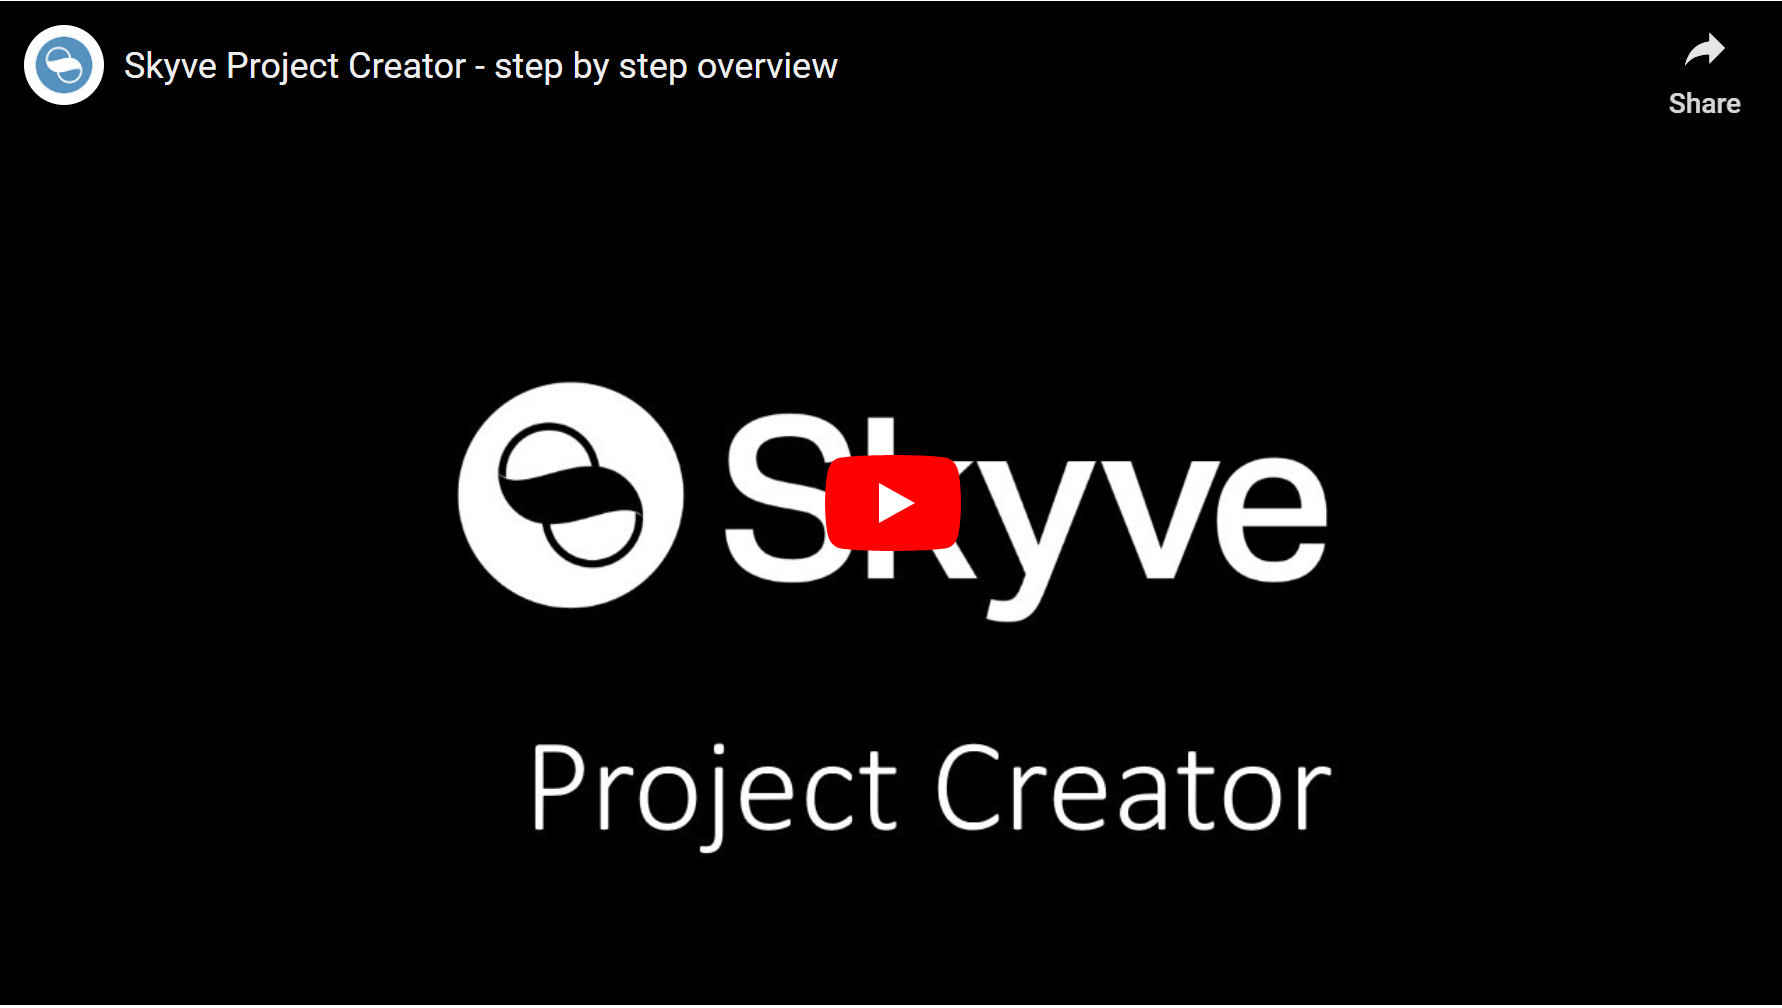 Skyve Project Creator